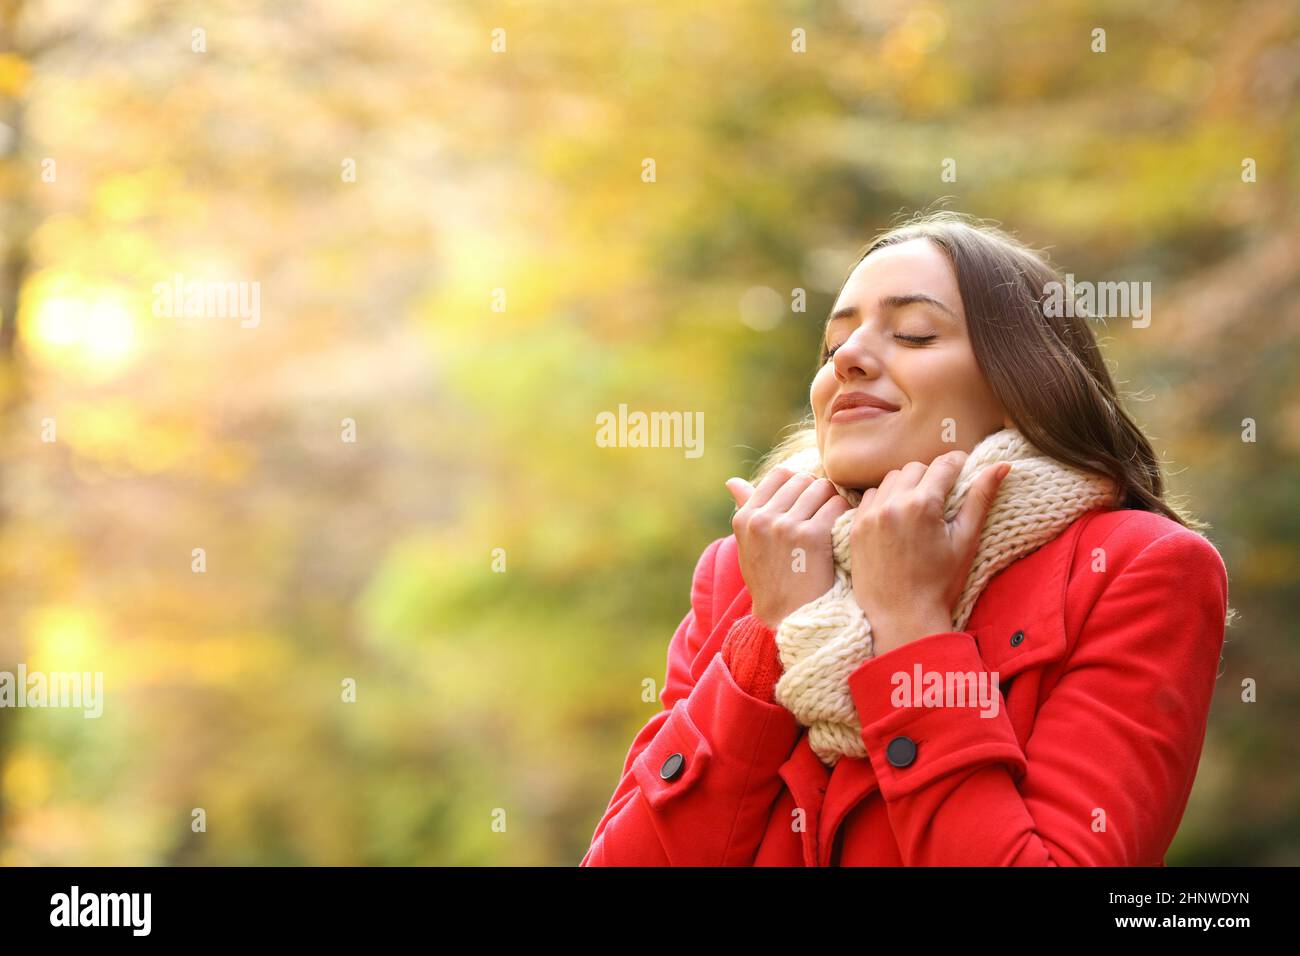 Fröhliche Frau in rot warm im Herbst in einem Park gekleidet Stockfoto